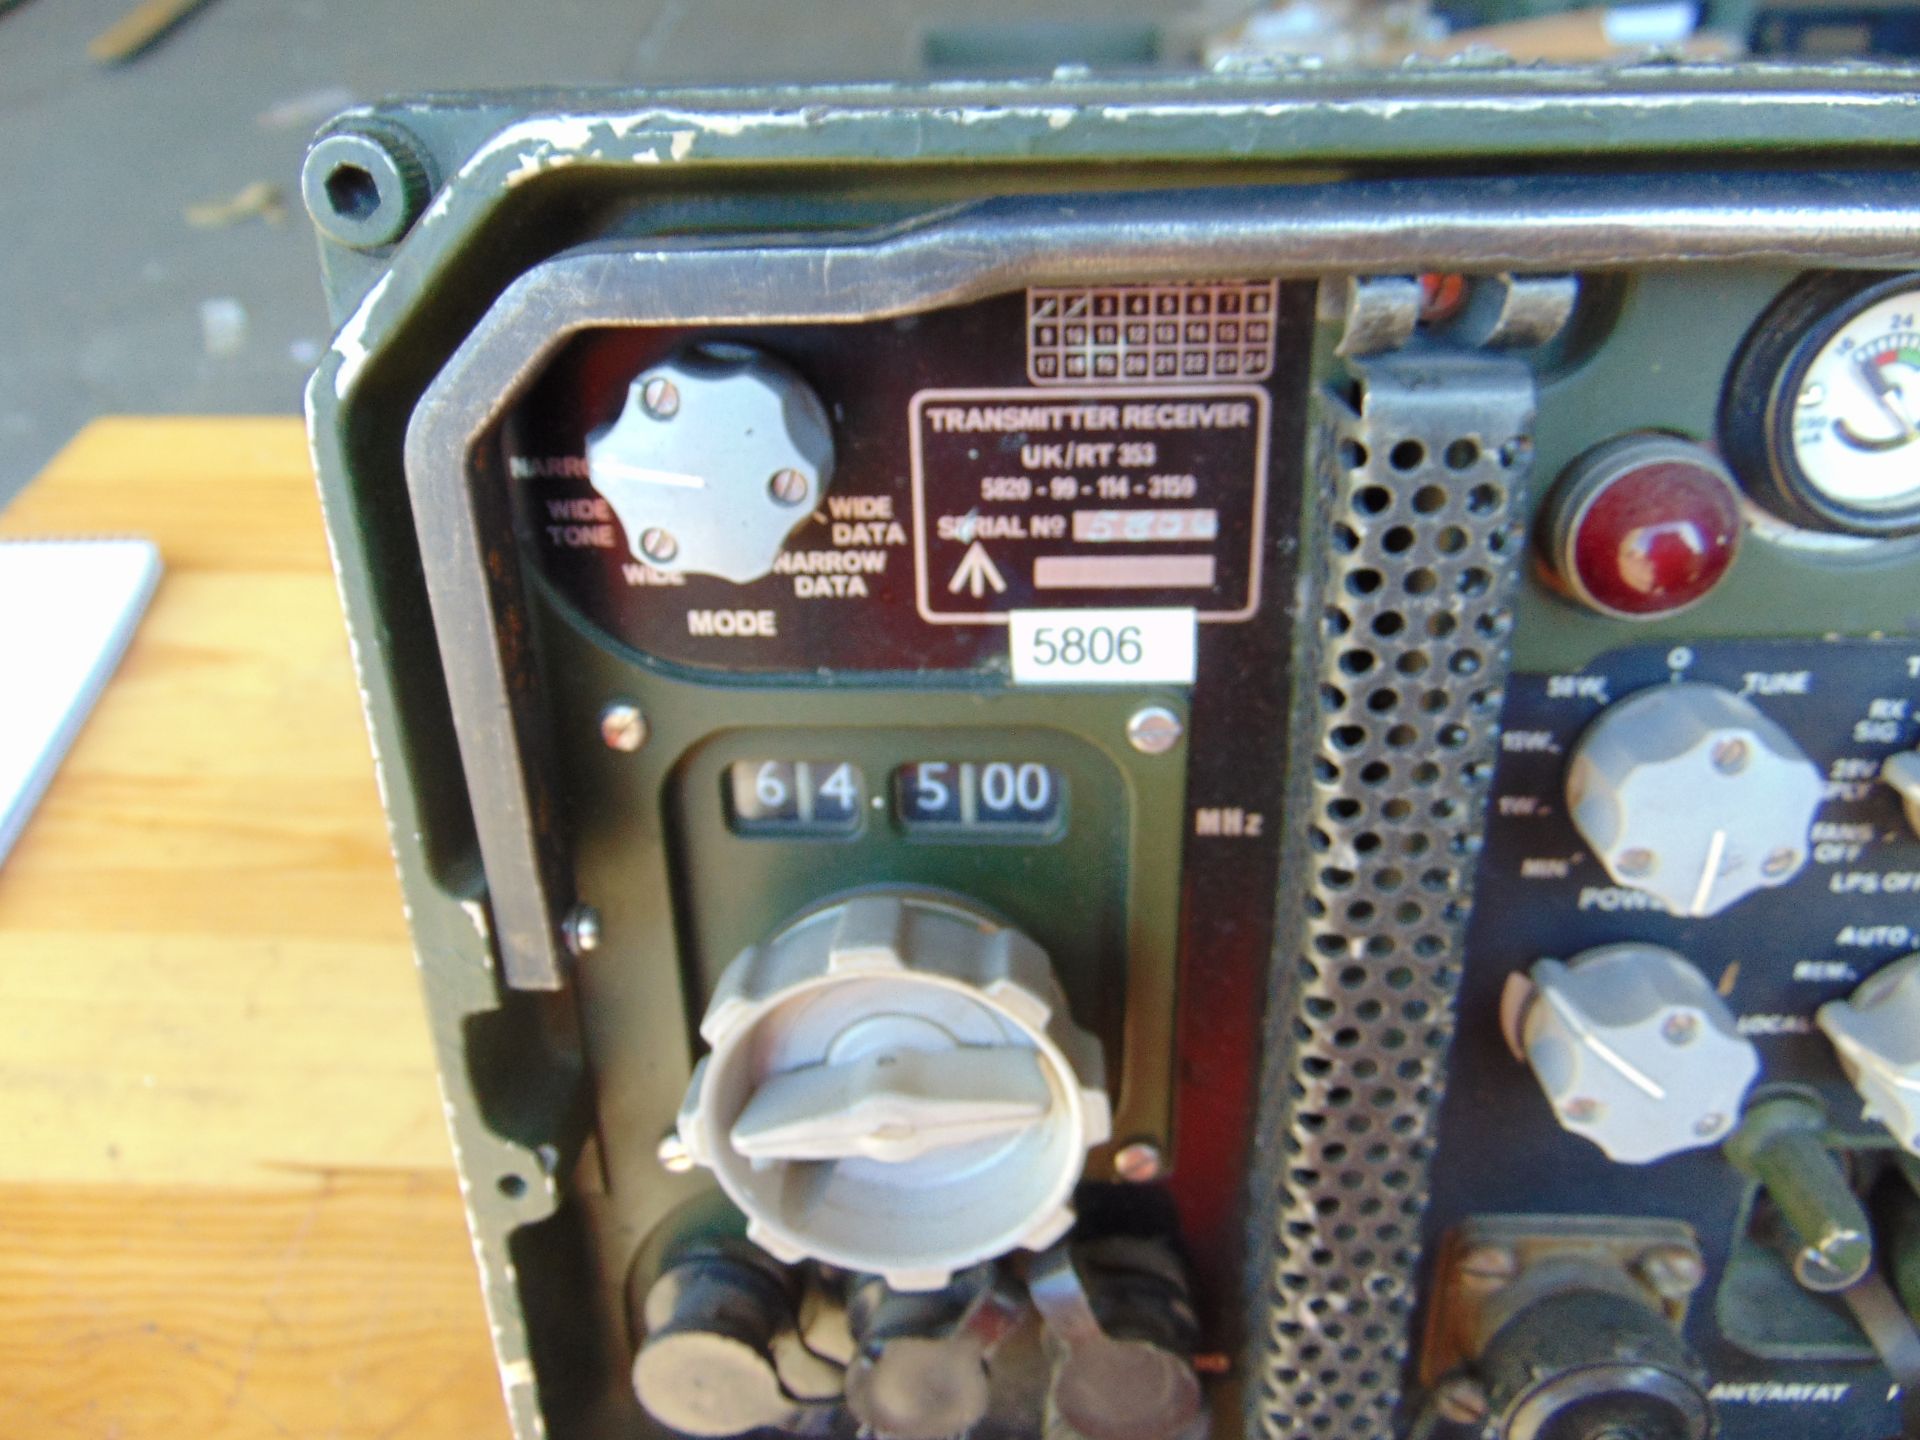 Clansman UK/RT 353 VHF Transmitter Receiver - Image 4 of 4